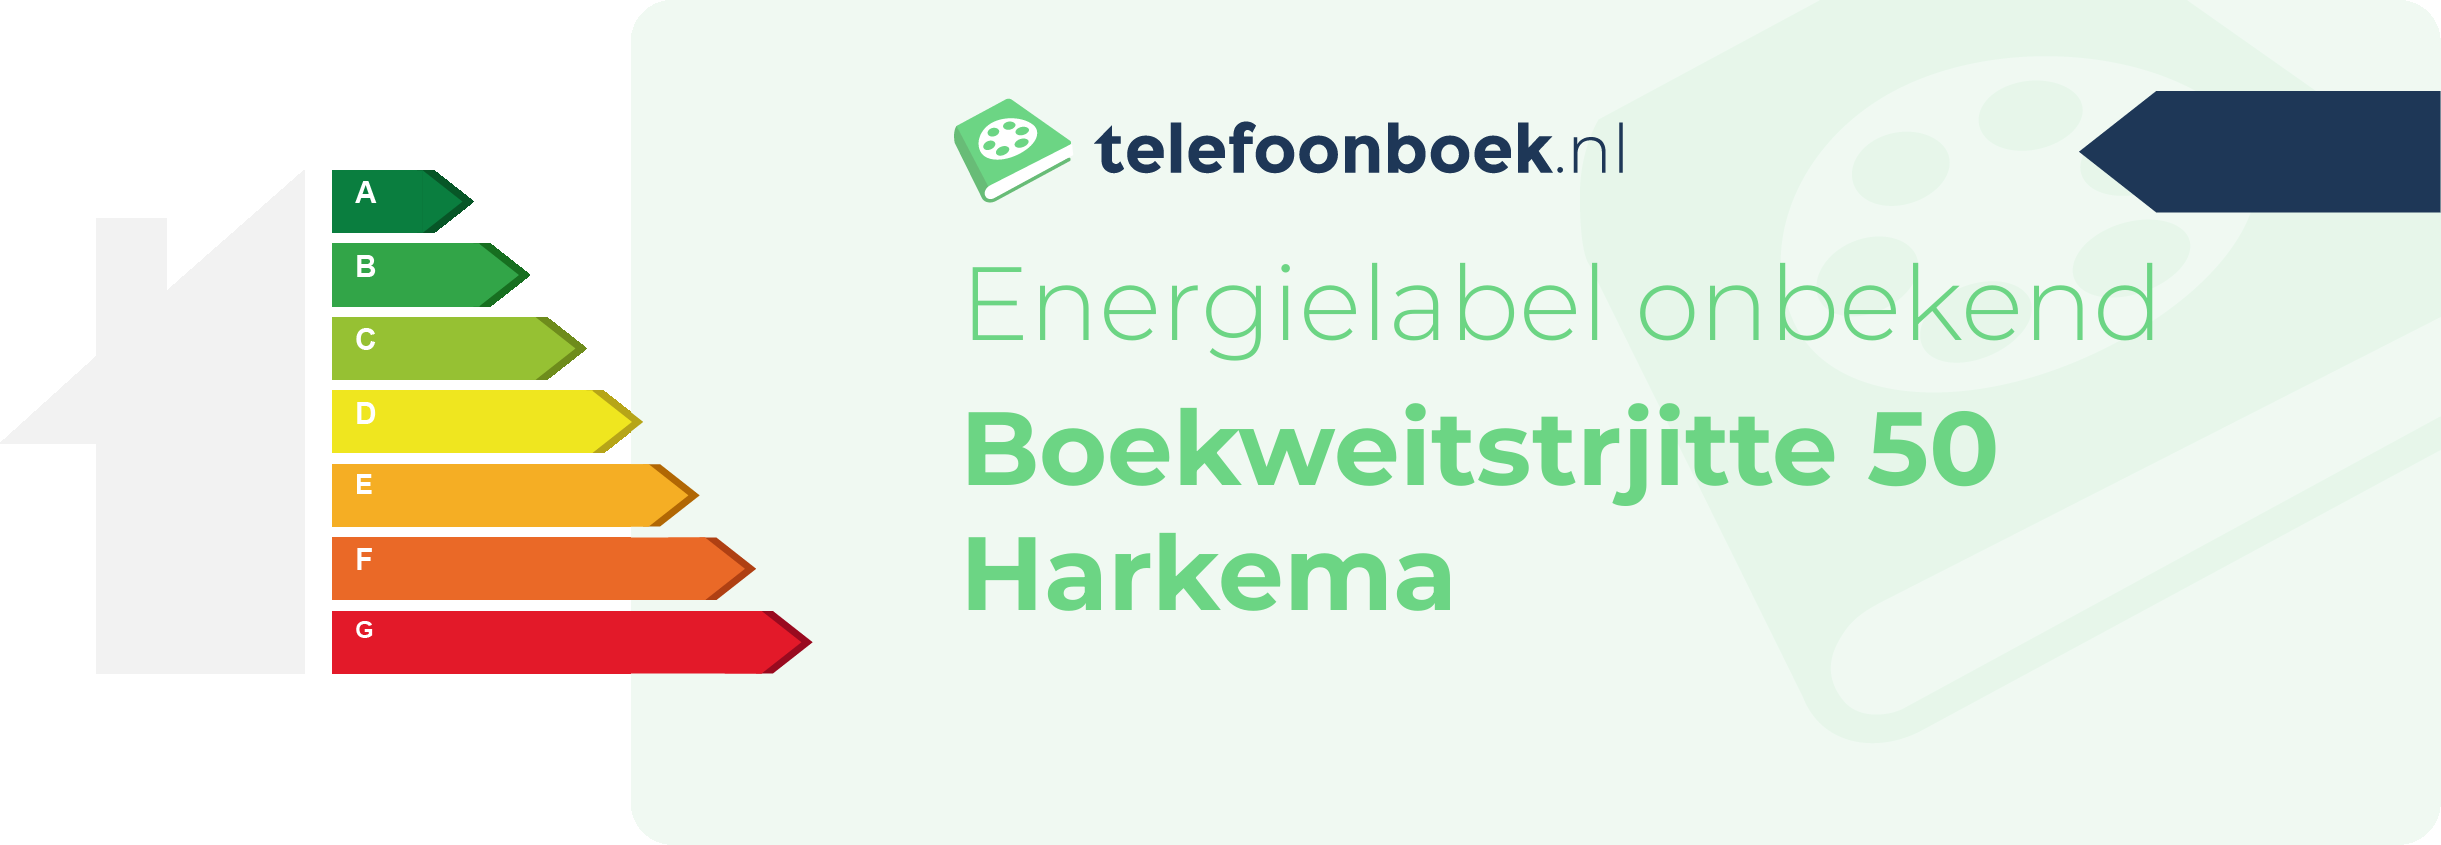 Energielabel Boekweitstrjitte 50 Harkema